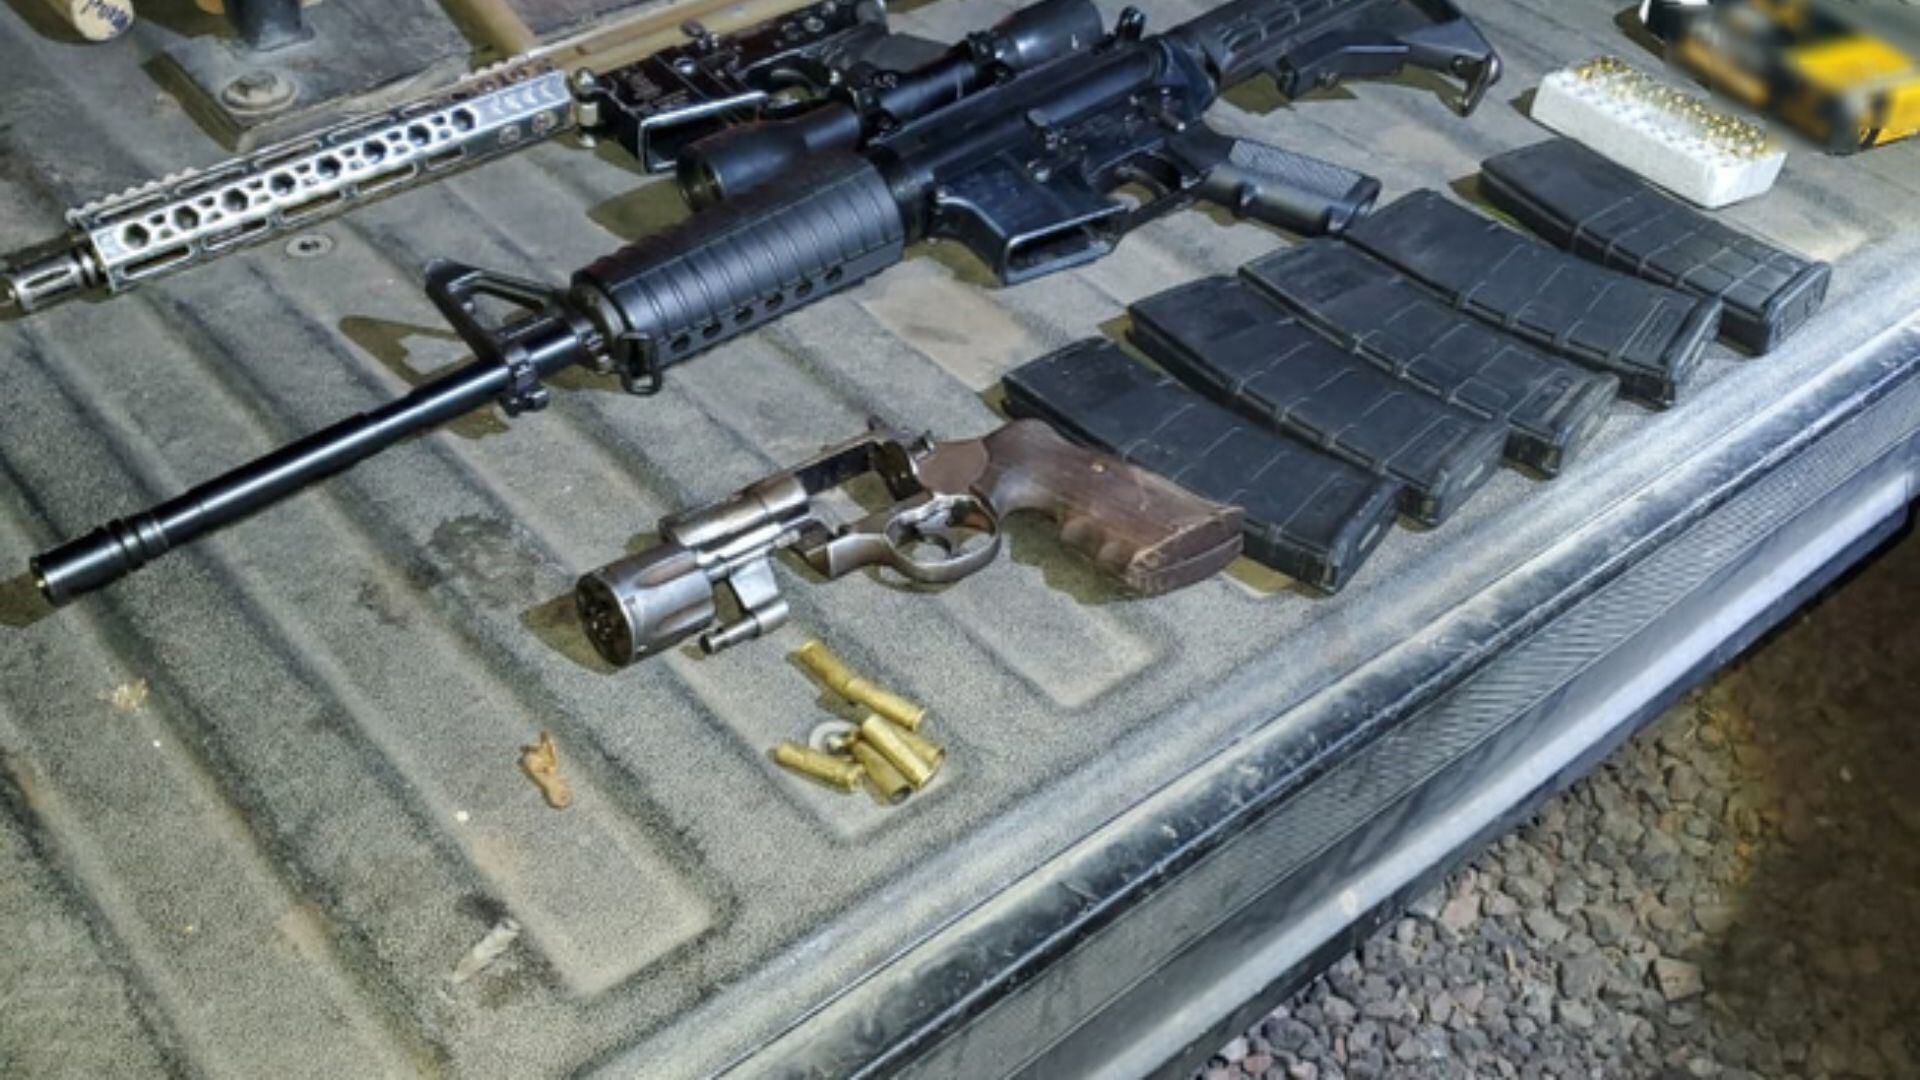 La GN también aseguró armas largas y algunos cartuchos. (Foto: Guardia Nacional)